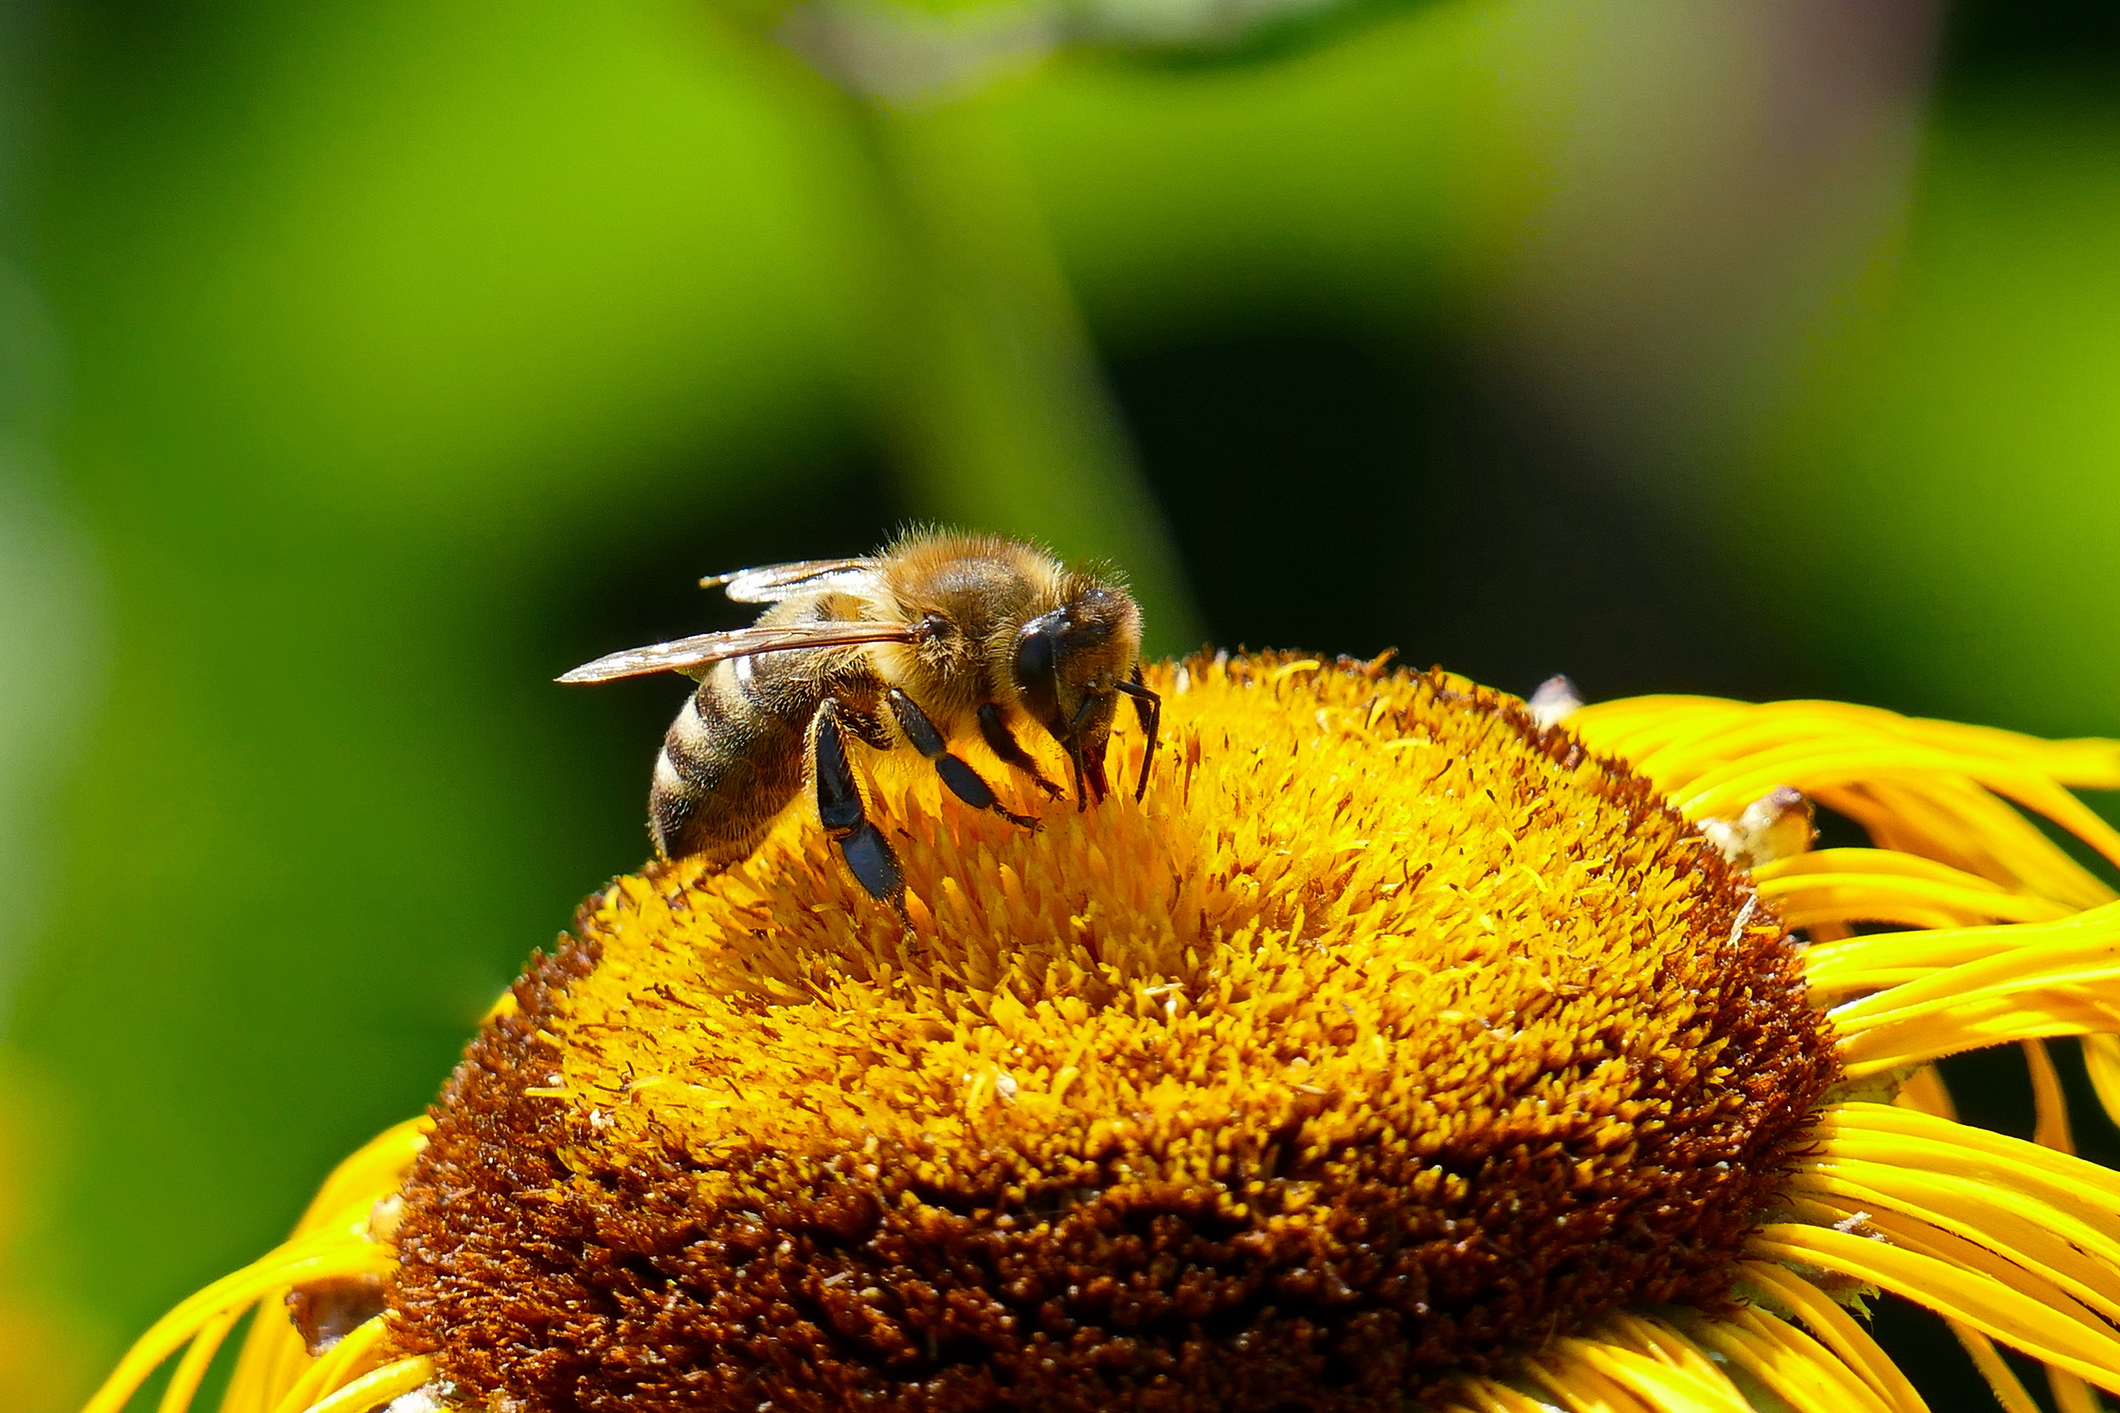 L'abeille prend le nectar de la fleur et, en échange, transporte son pollen vers d'autres fleurs.